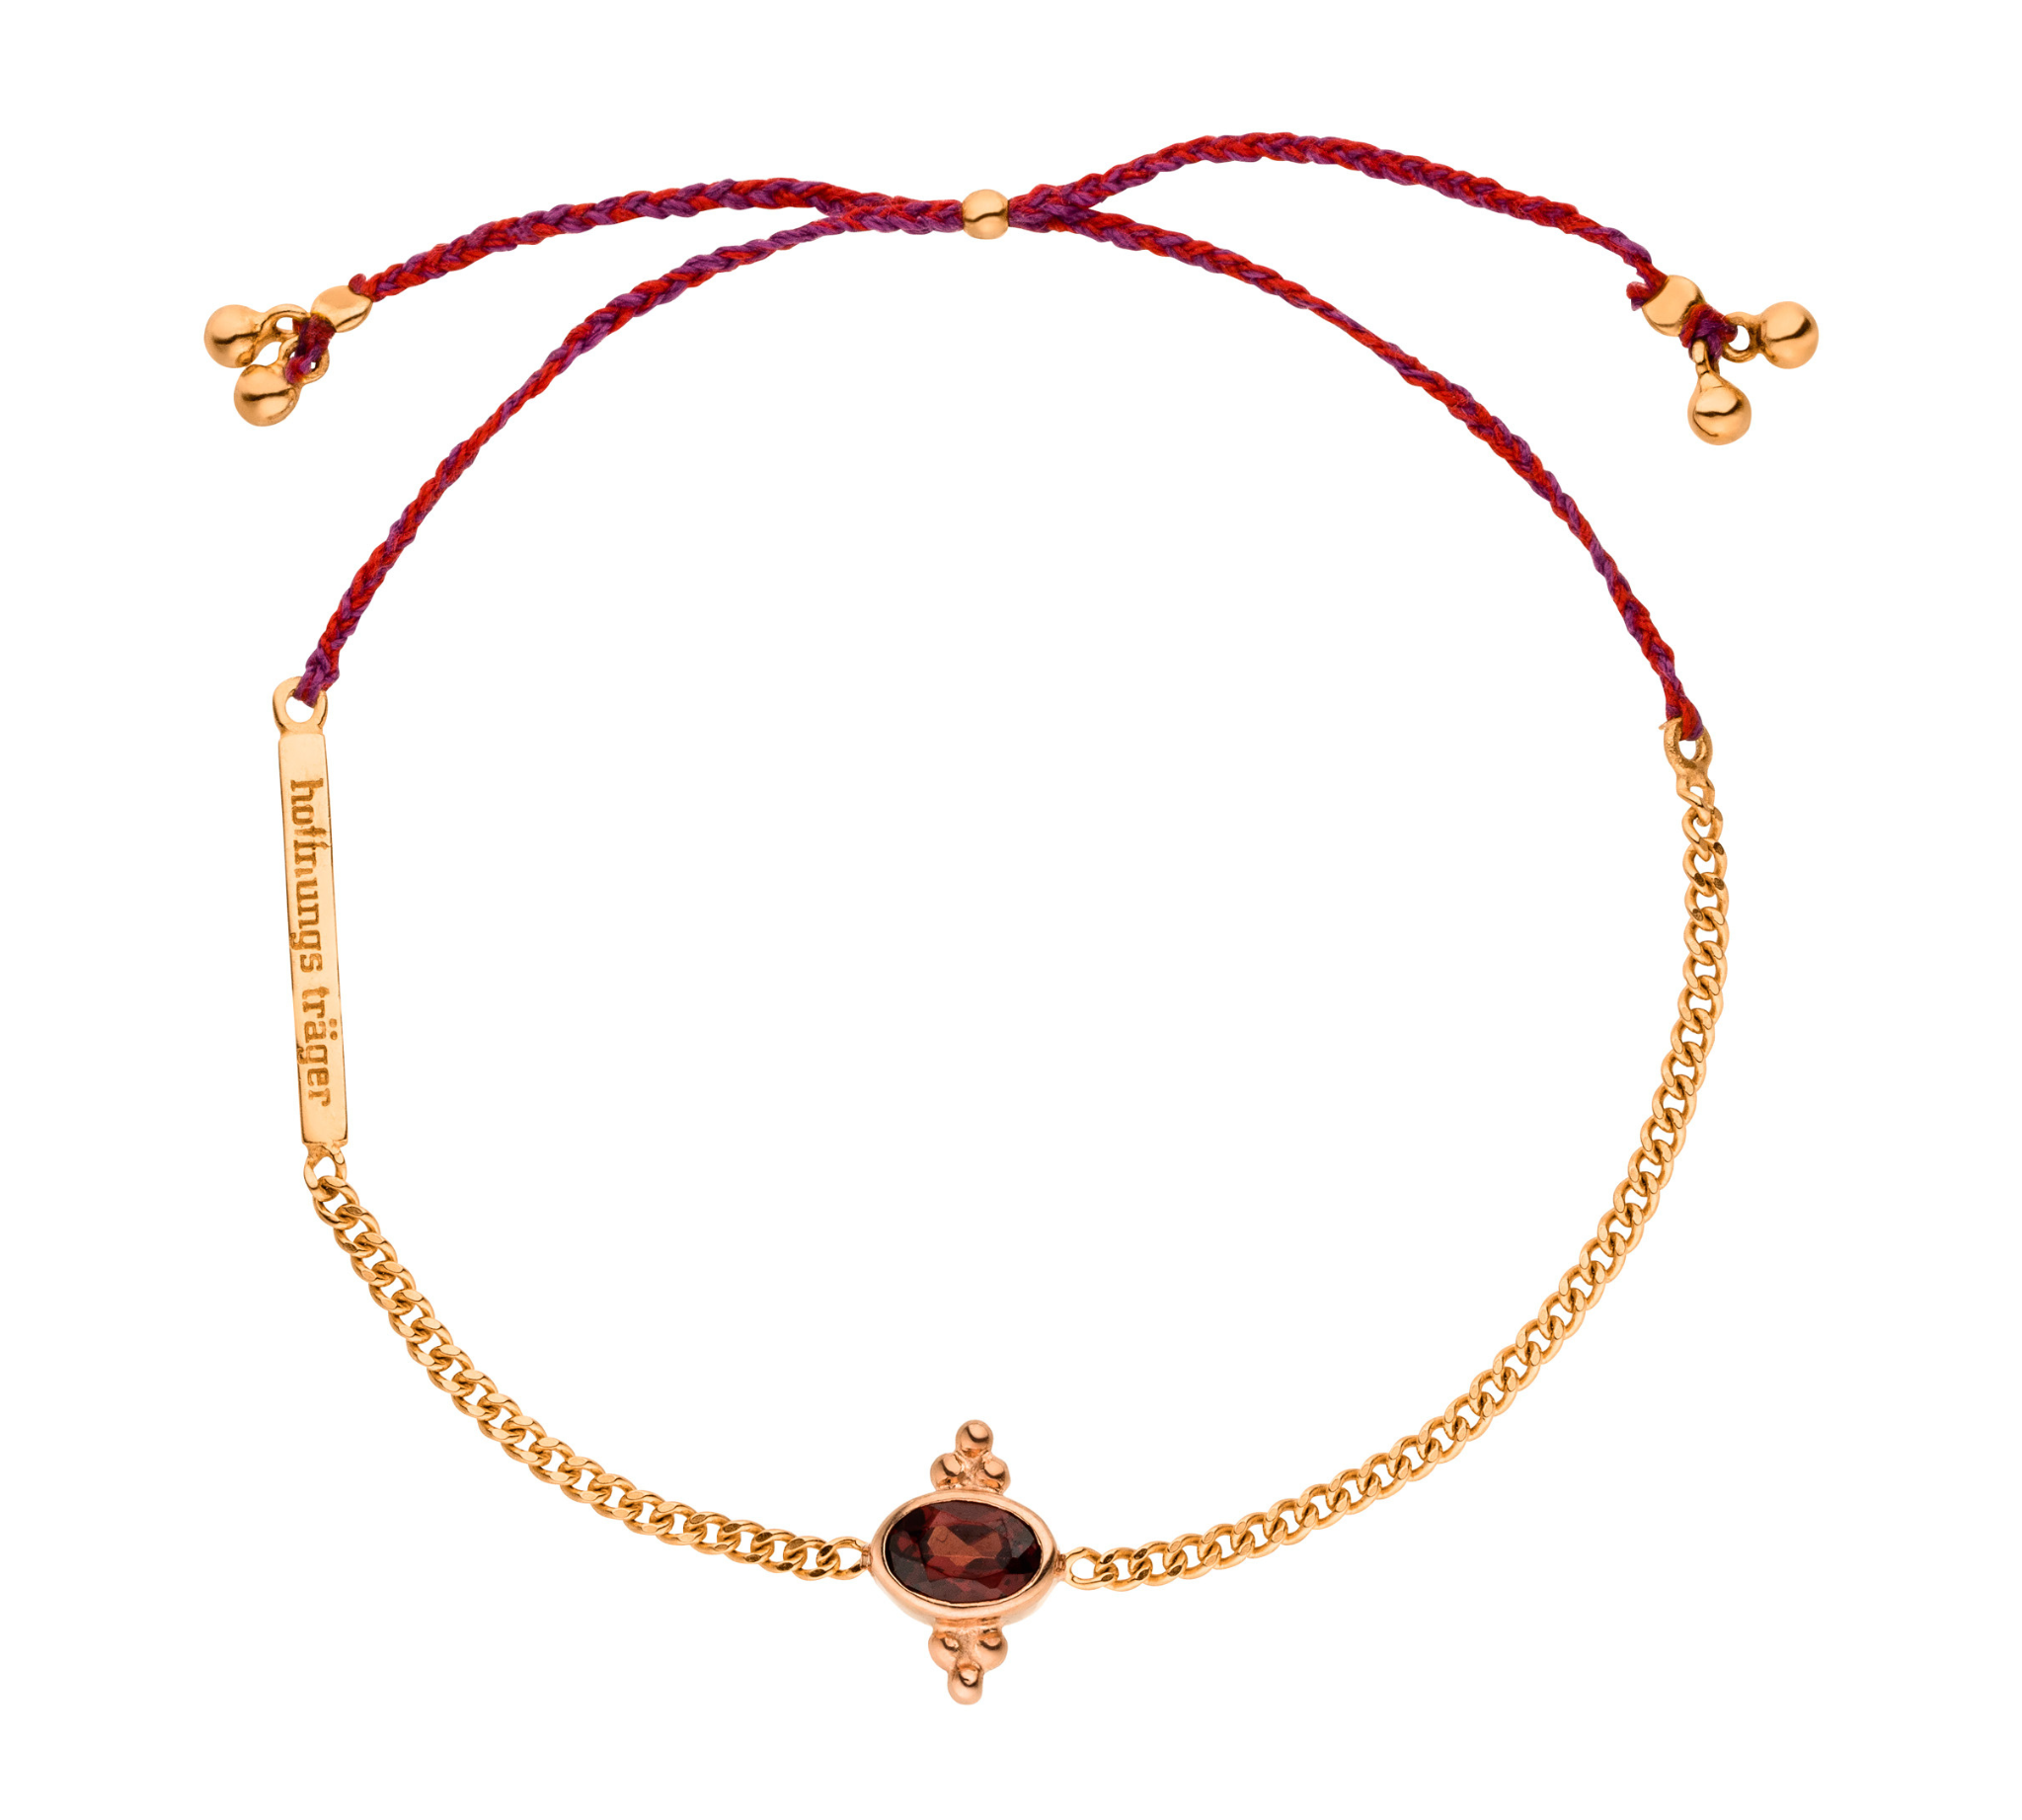 Granat Edelstein Armband mit rotem Band und 925 Silber rosévergoldet. 